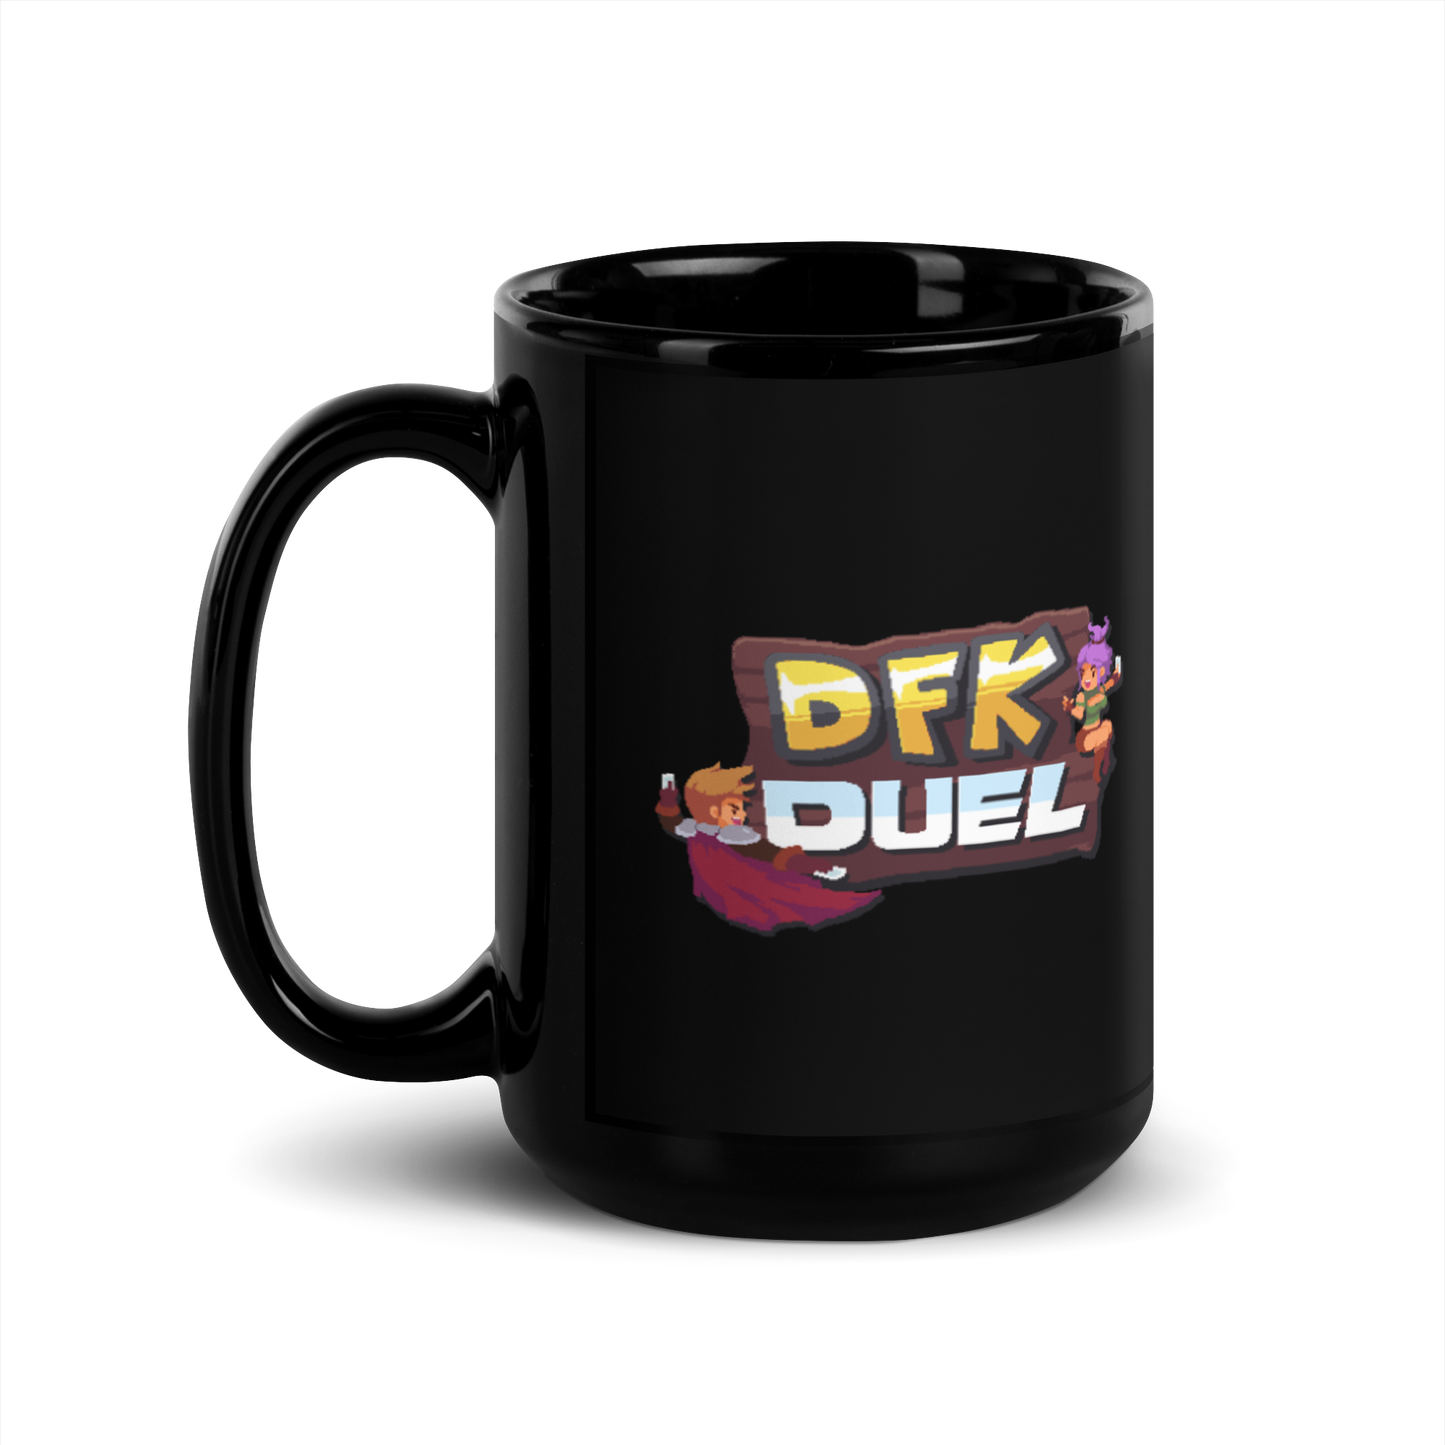 DFK Duel Mug - USA ONLY